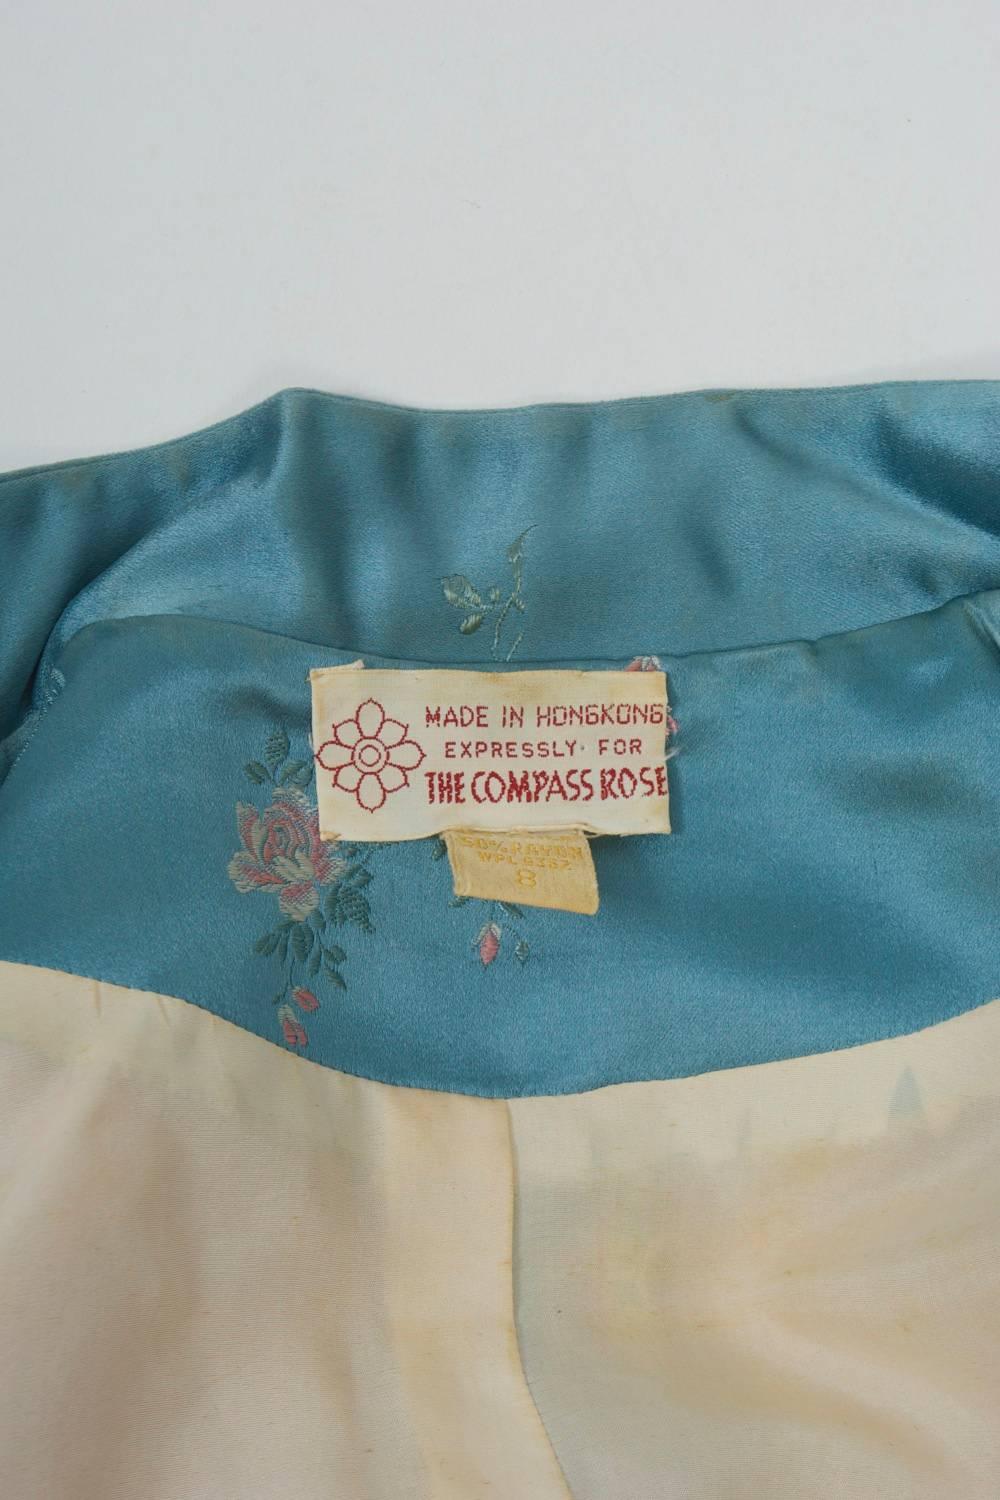 Brocade Hong Kong Jacket and Pants For Sale 2